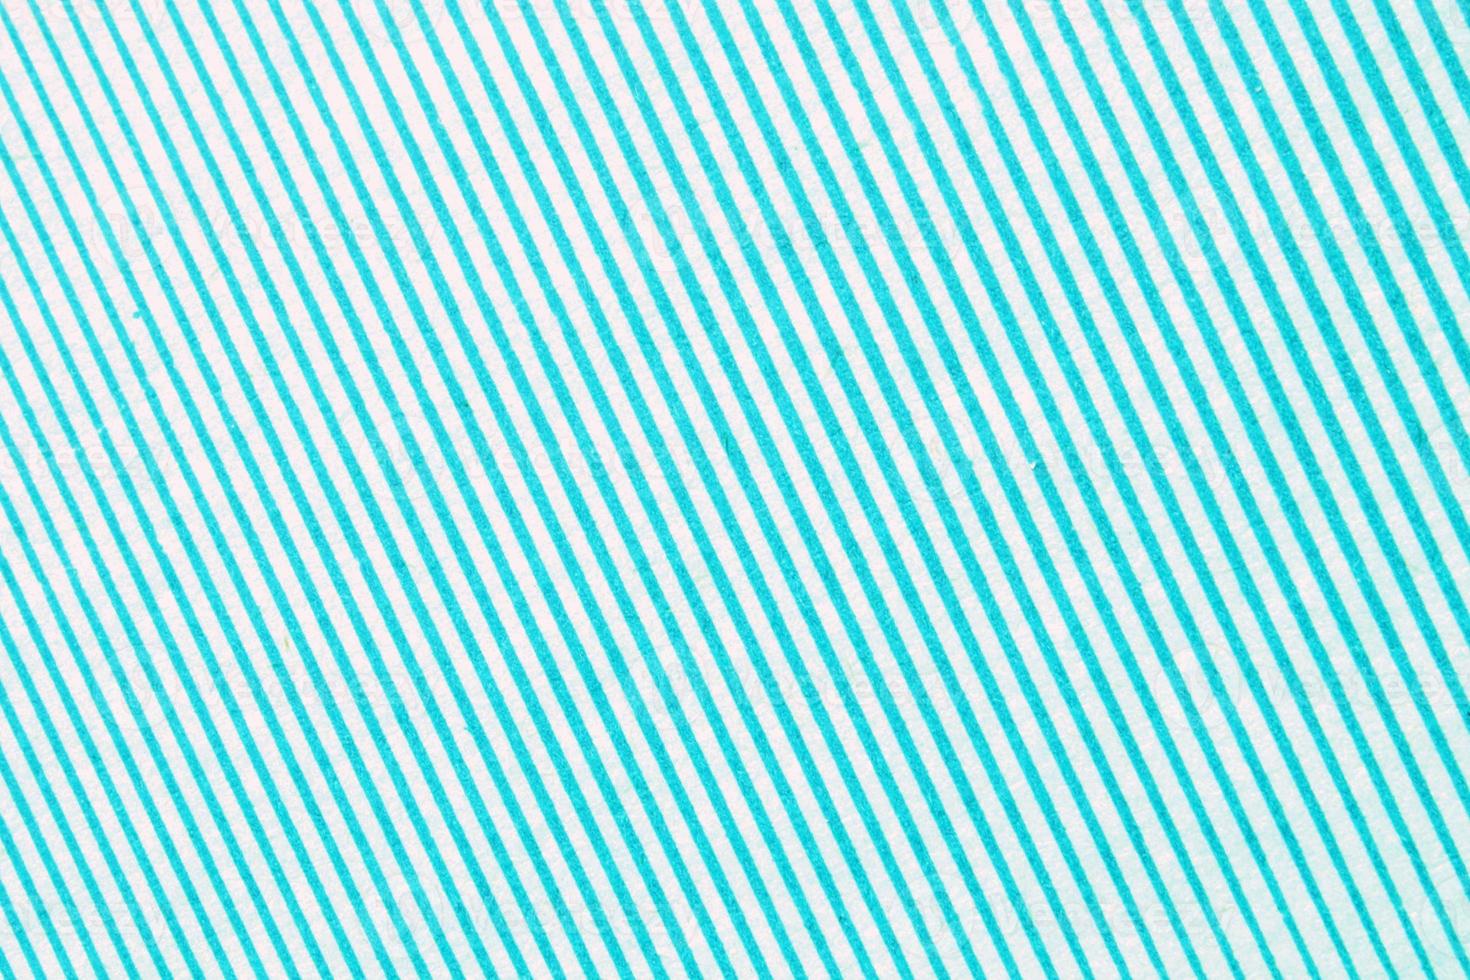 abstract papier blauw en wit meetkundig symmetrisch structuur gestreept oppervlakte diagonaal lijnen achtergrond. structuur ontwerp karton vorm achtergrond. decoratie interieur concept. plat leggen, detailopname foto